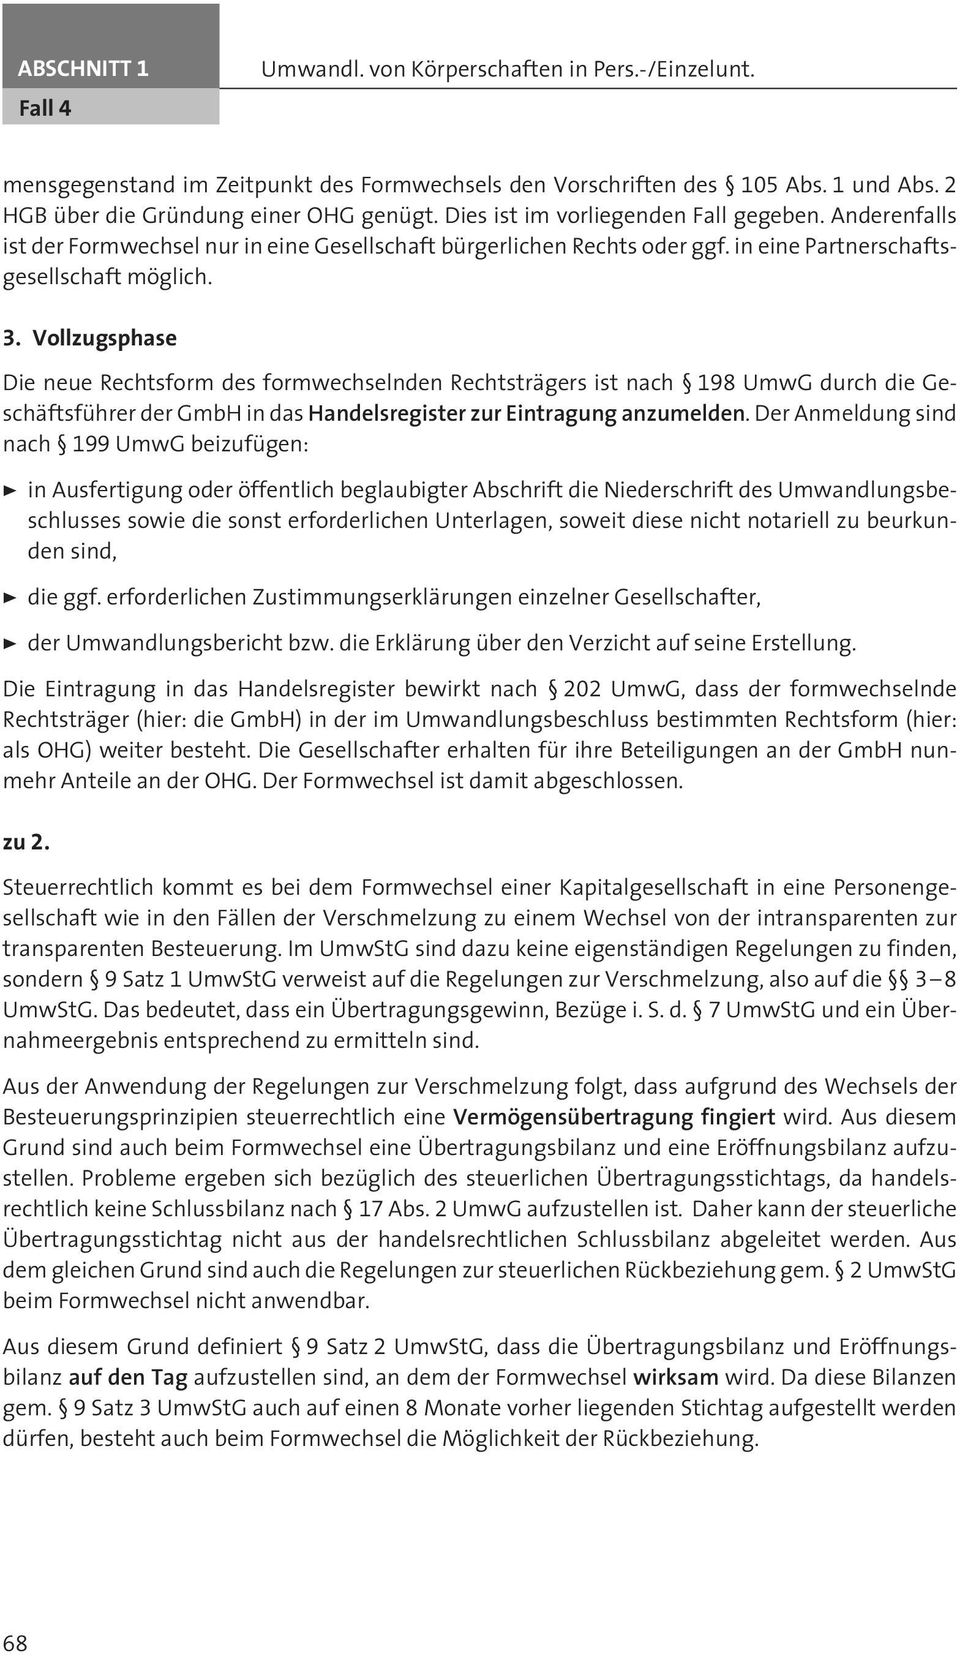 Vollzugsphase Die neue Rechtsform des formwechselnden Rechtsträgers ist nach 198 UmwG durch die Geschäftsführer der GmbH in das Handelsregister zur Eintragung anzumelden.